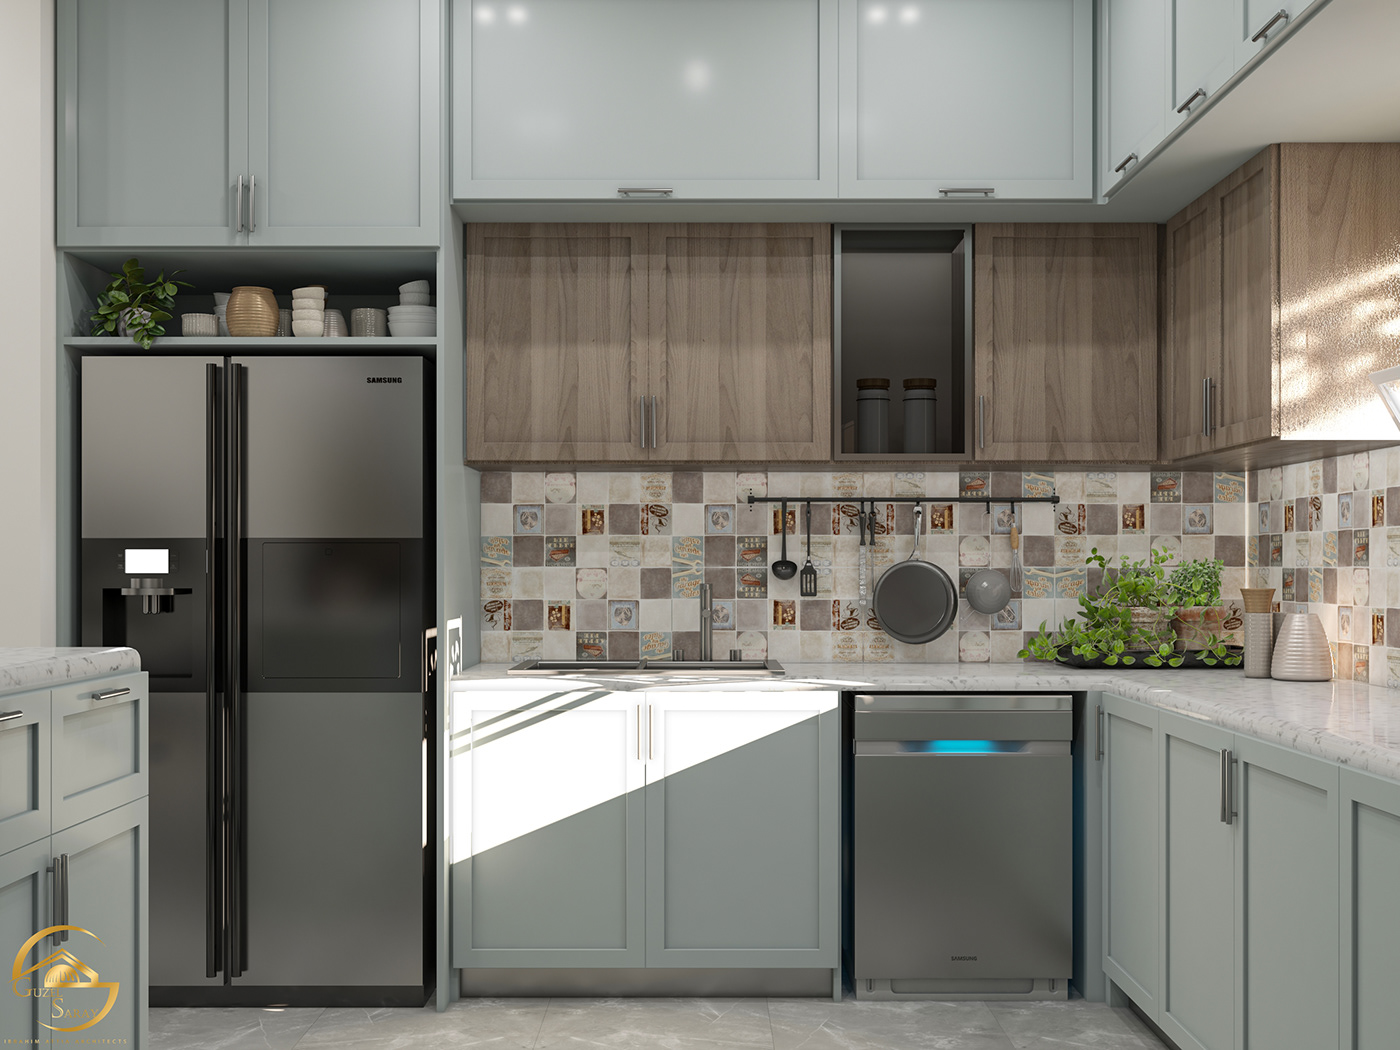 kitchen Interior 3ds max vray design green wood Render 3D interior design 